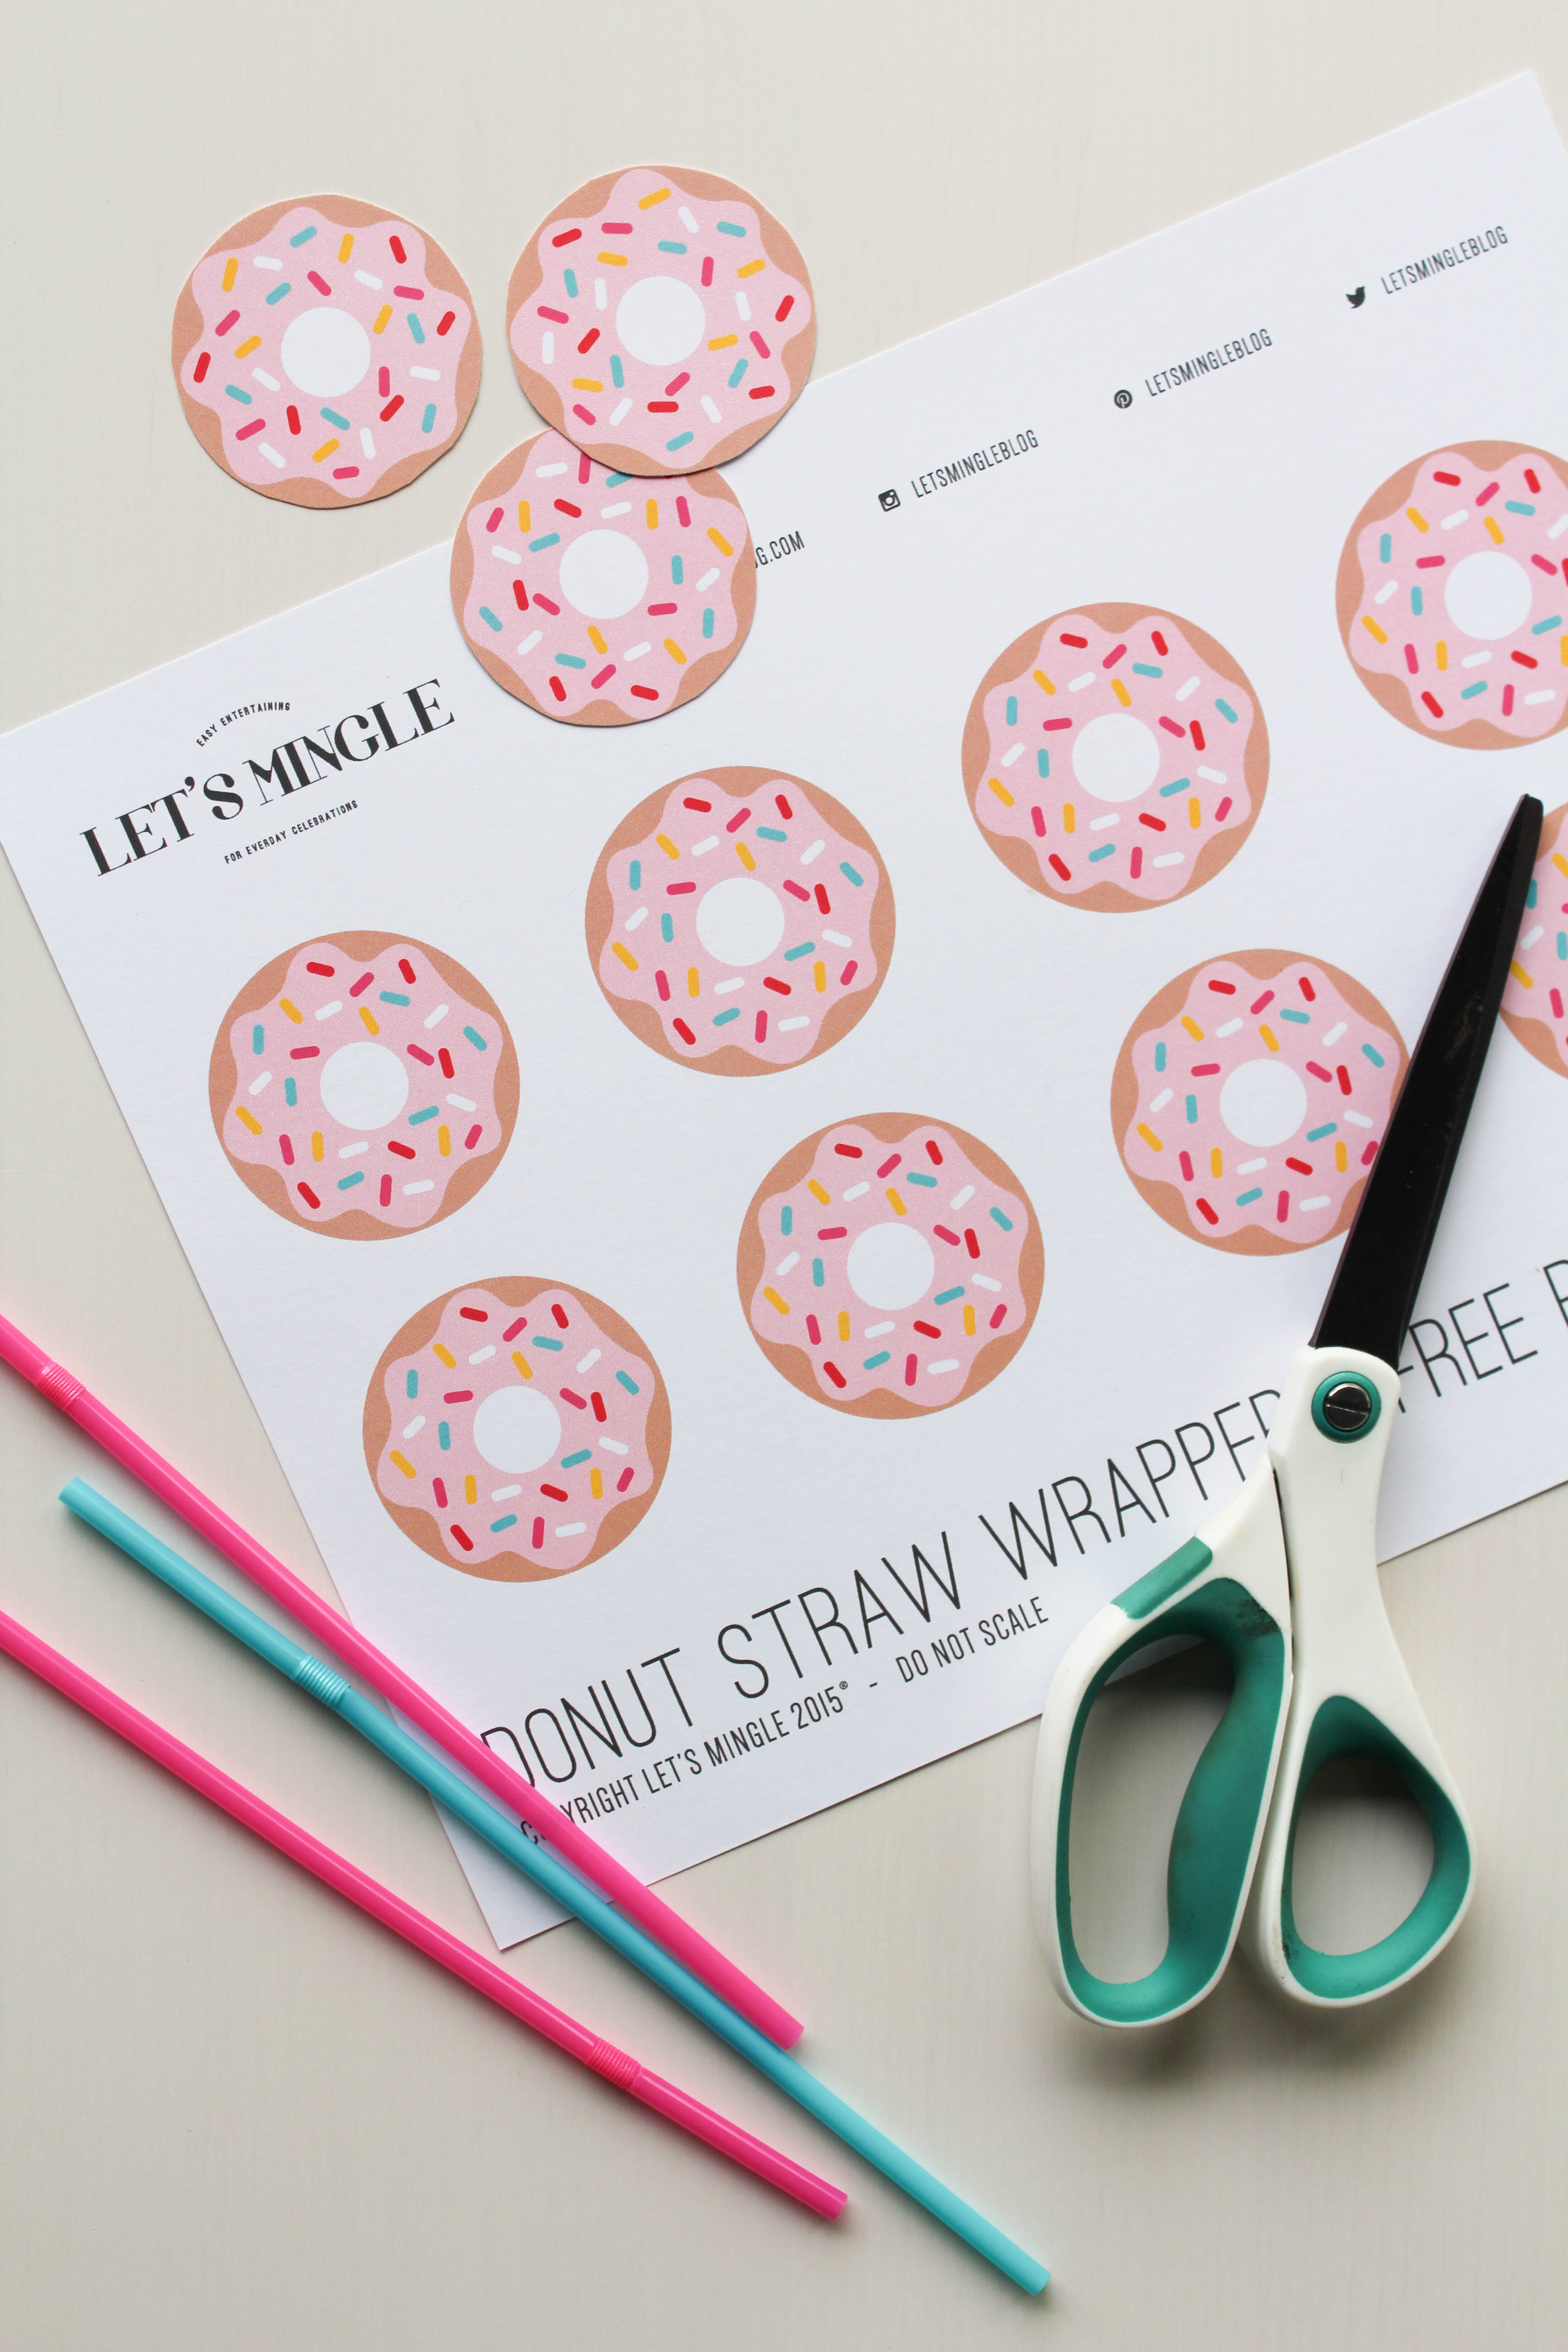 http://www.letsmingleblog.com/wp-content/uploads/2015/05/Printable-Donut-Straw-Toppers.jpg